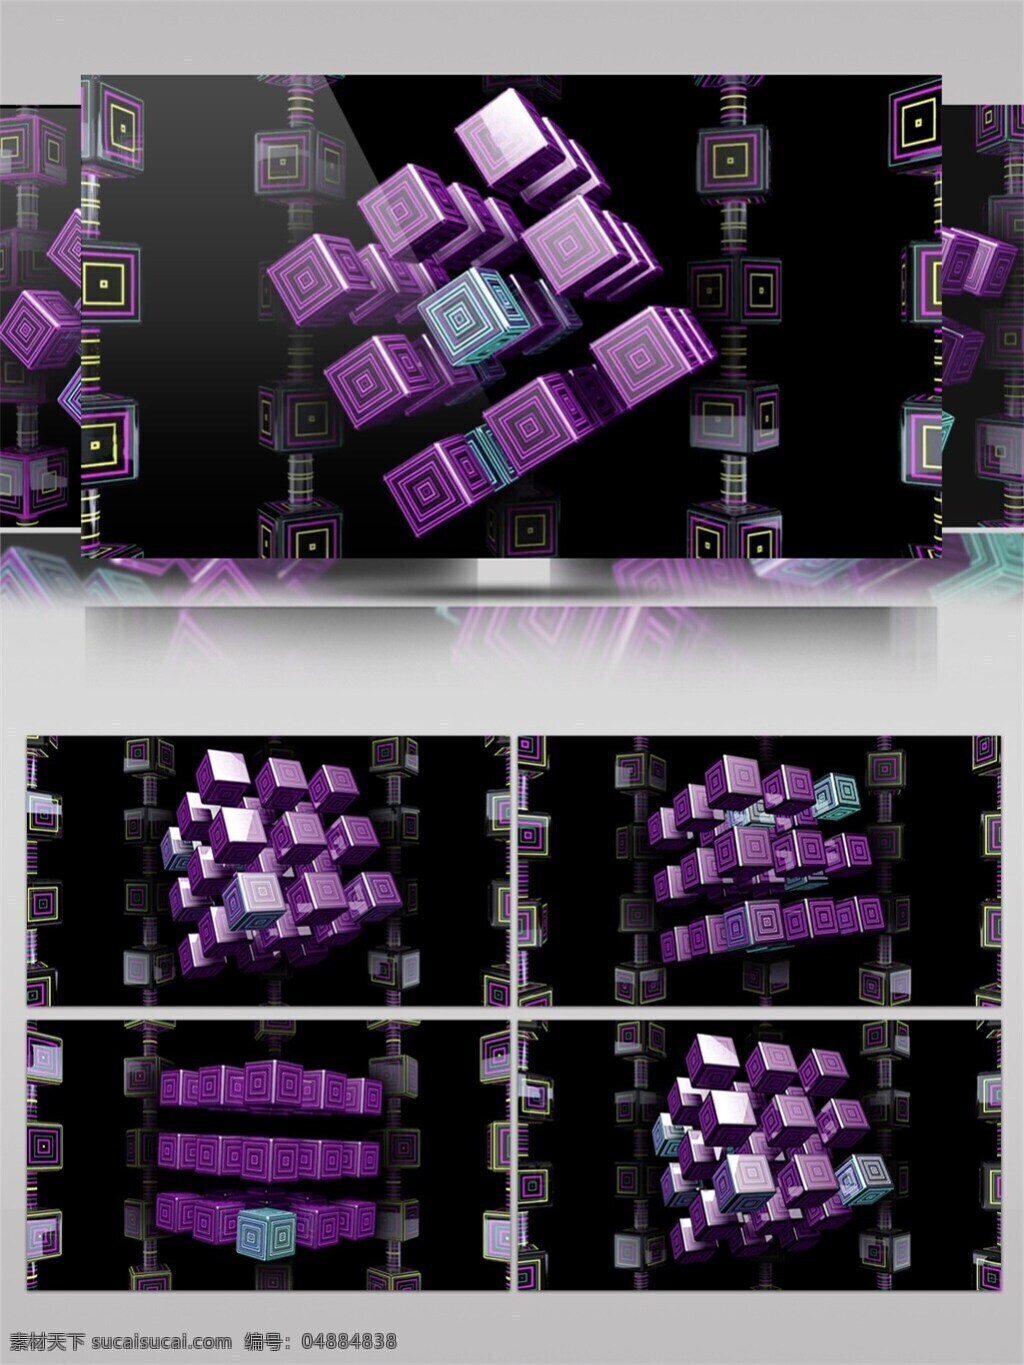 紫色 魔方 高清 视频 高质量 背景 空间几何 空间结合 梦幻空间 特效 紫色正方形